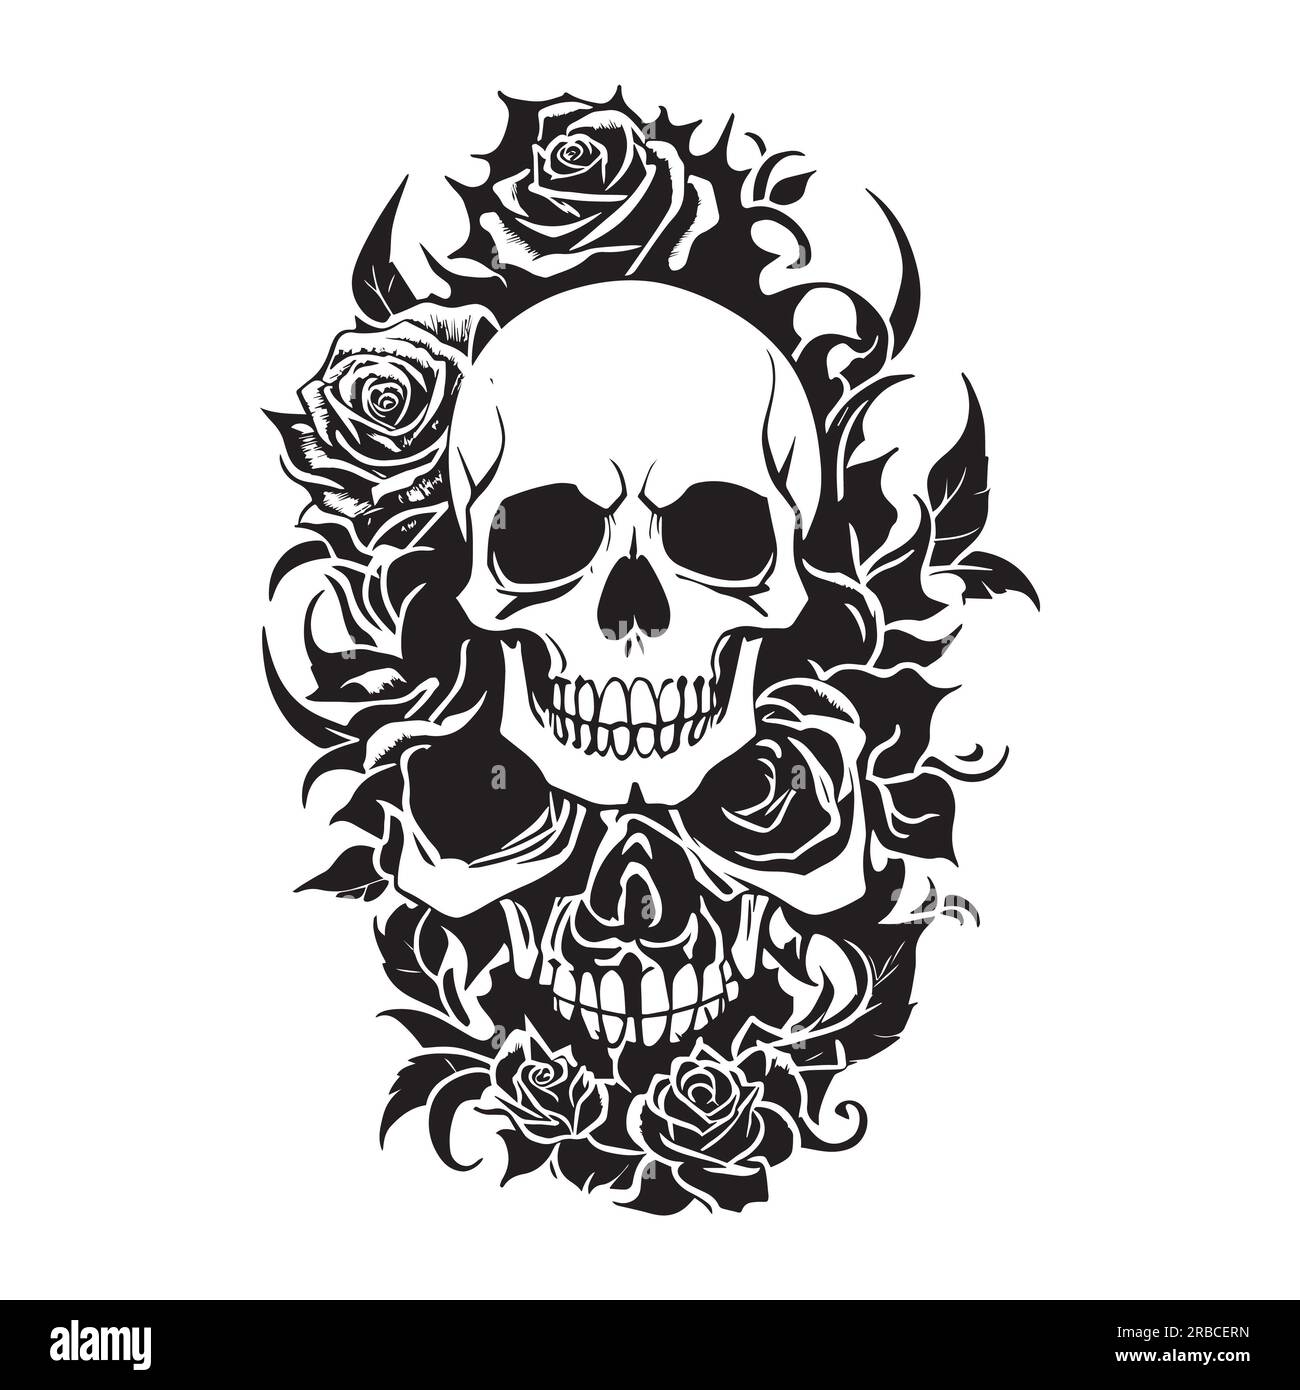 Crâne humain noir et blanc et roses, illustration de crâne humain et roses pour tatouage, impression, t-shirt. Banque D'Images